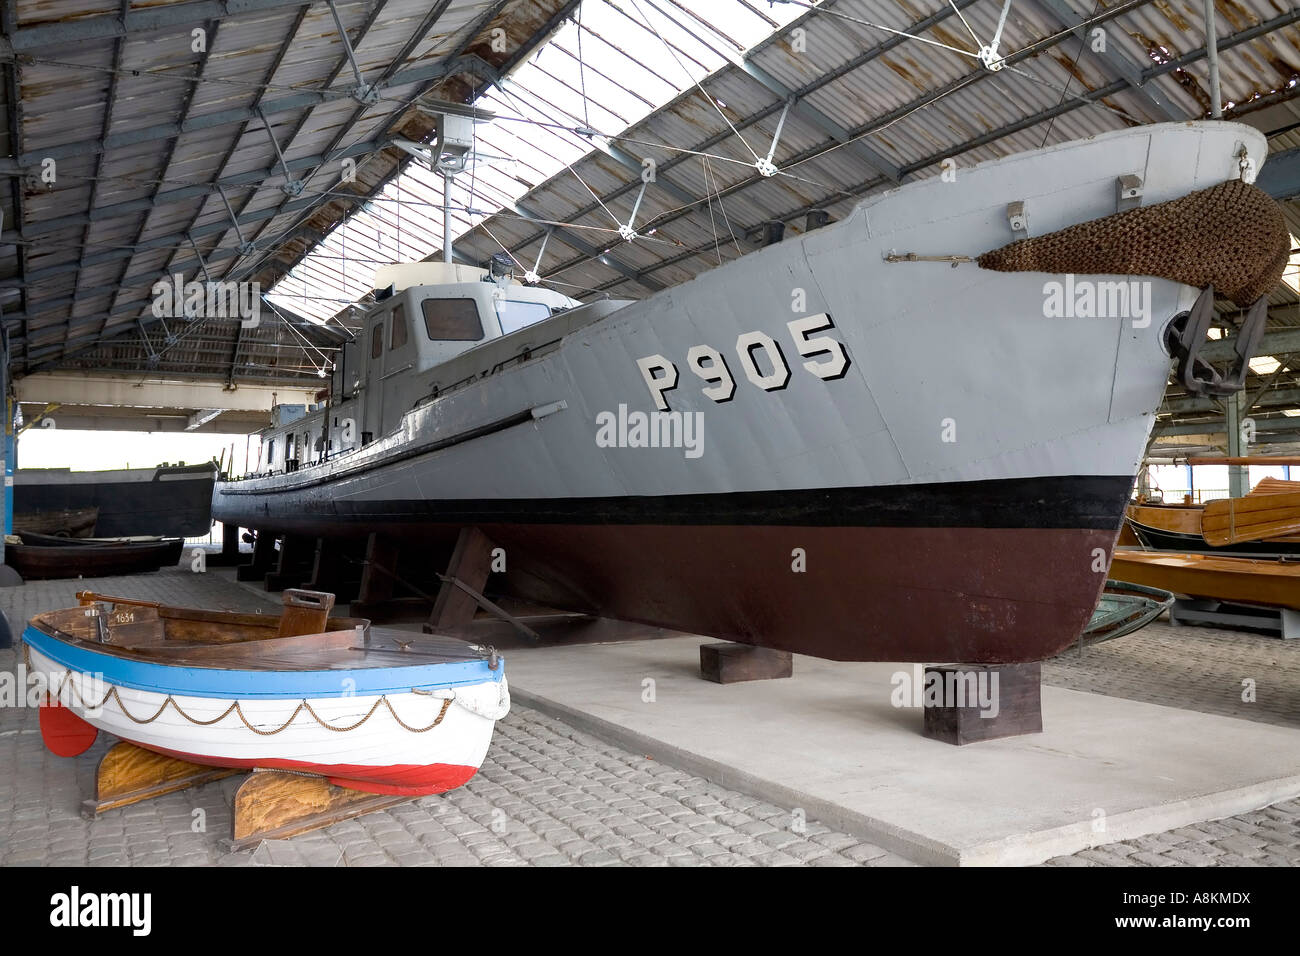 Gommone e barca da pesca d'alto mare, esponat al museo nazionale della navigazione, hangar, riva del fiume Schelde, anversa, belgio Foto Stock